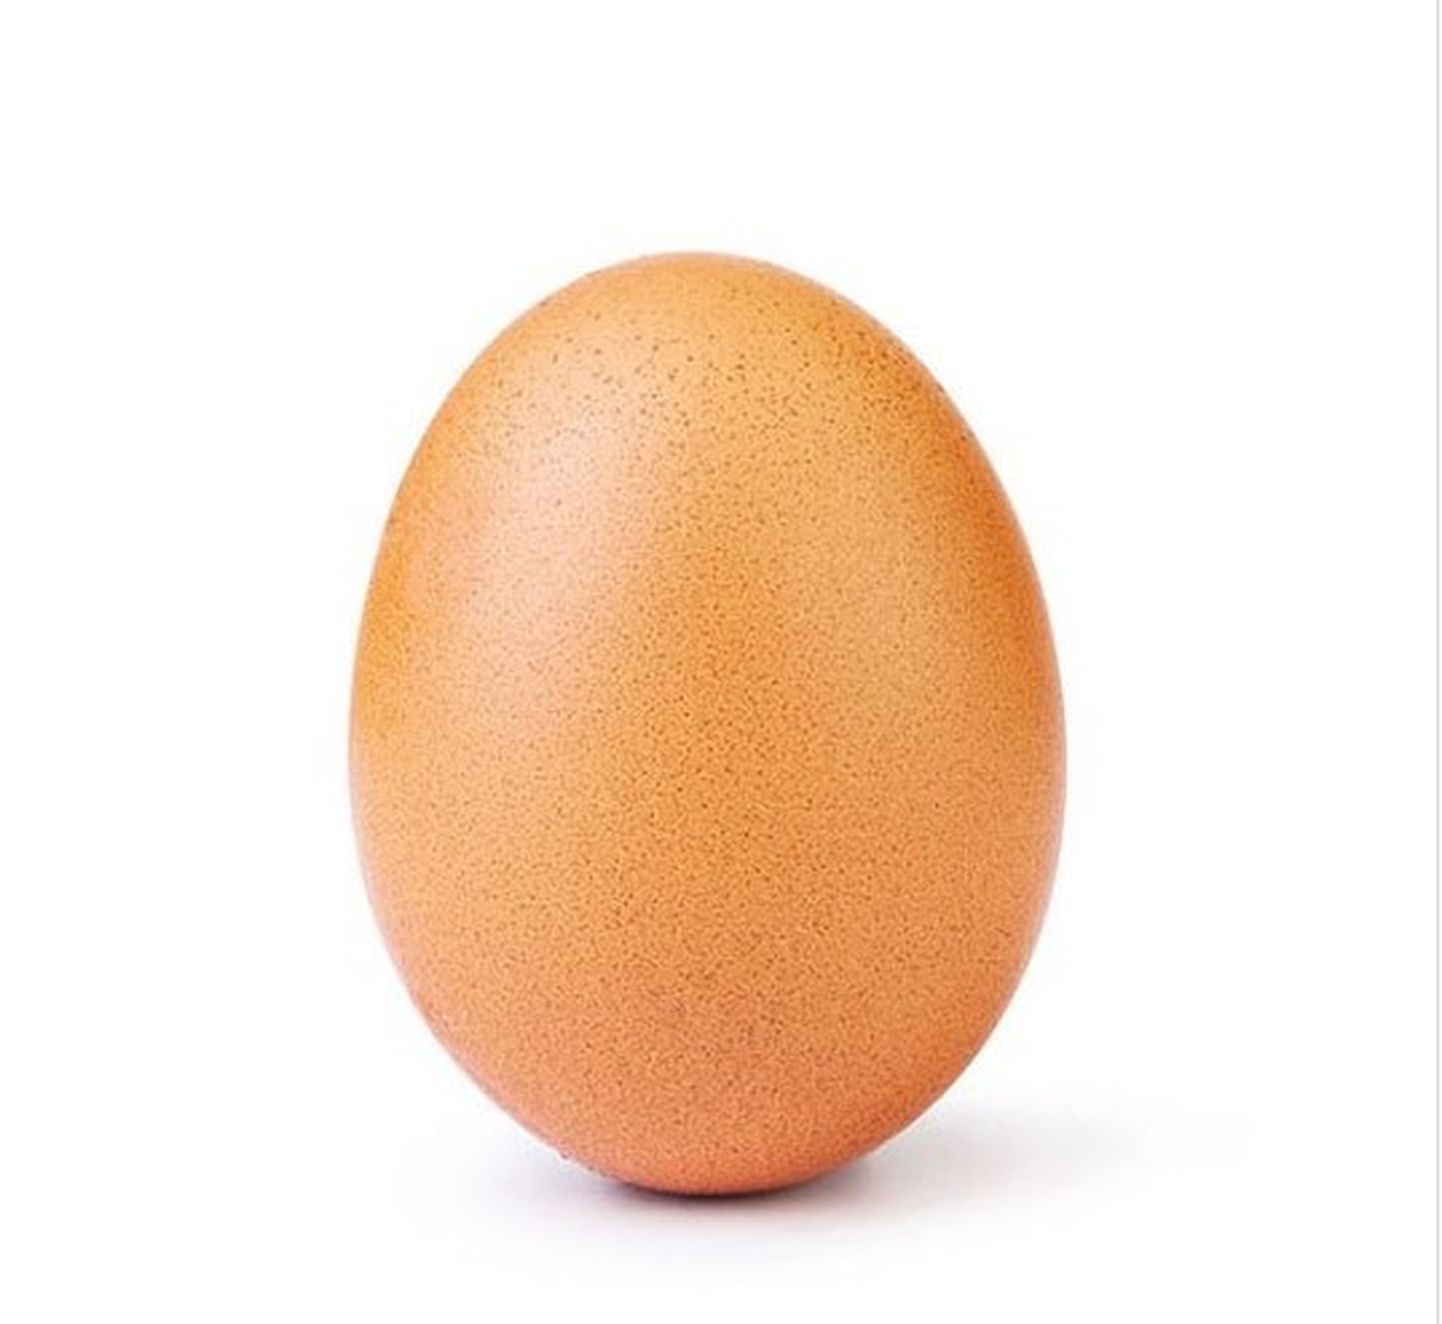 Самое популярное яйцо в Instagram